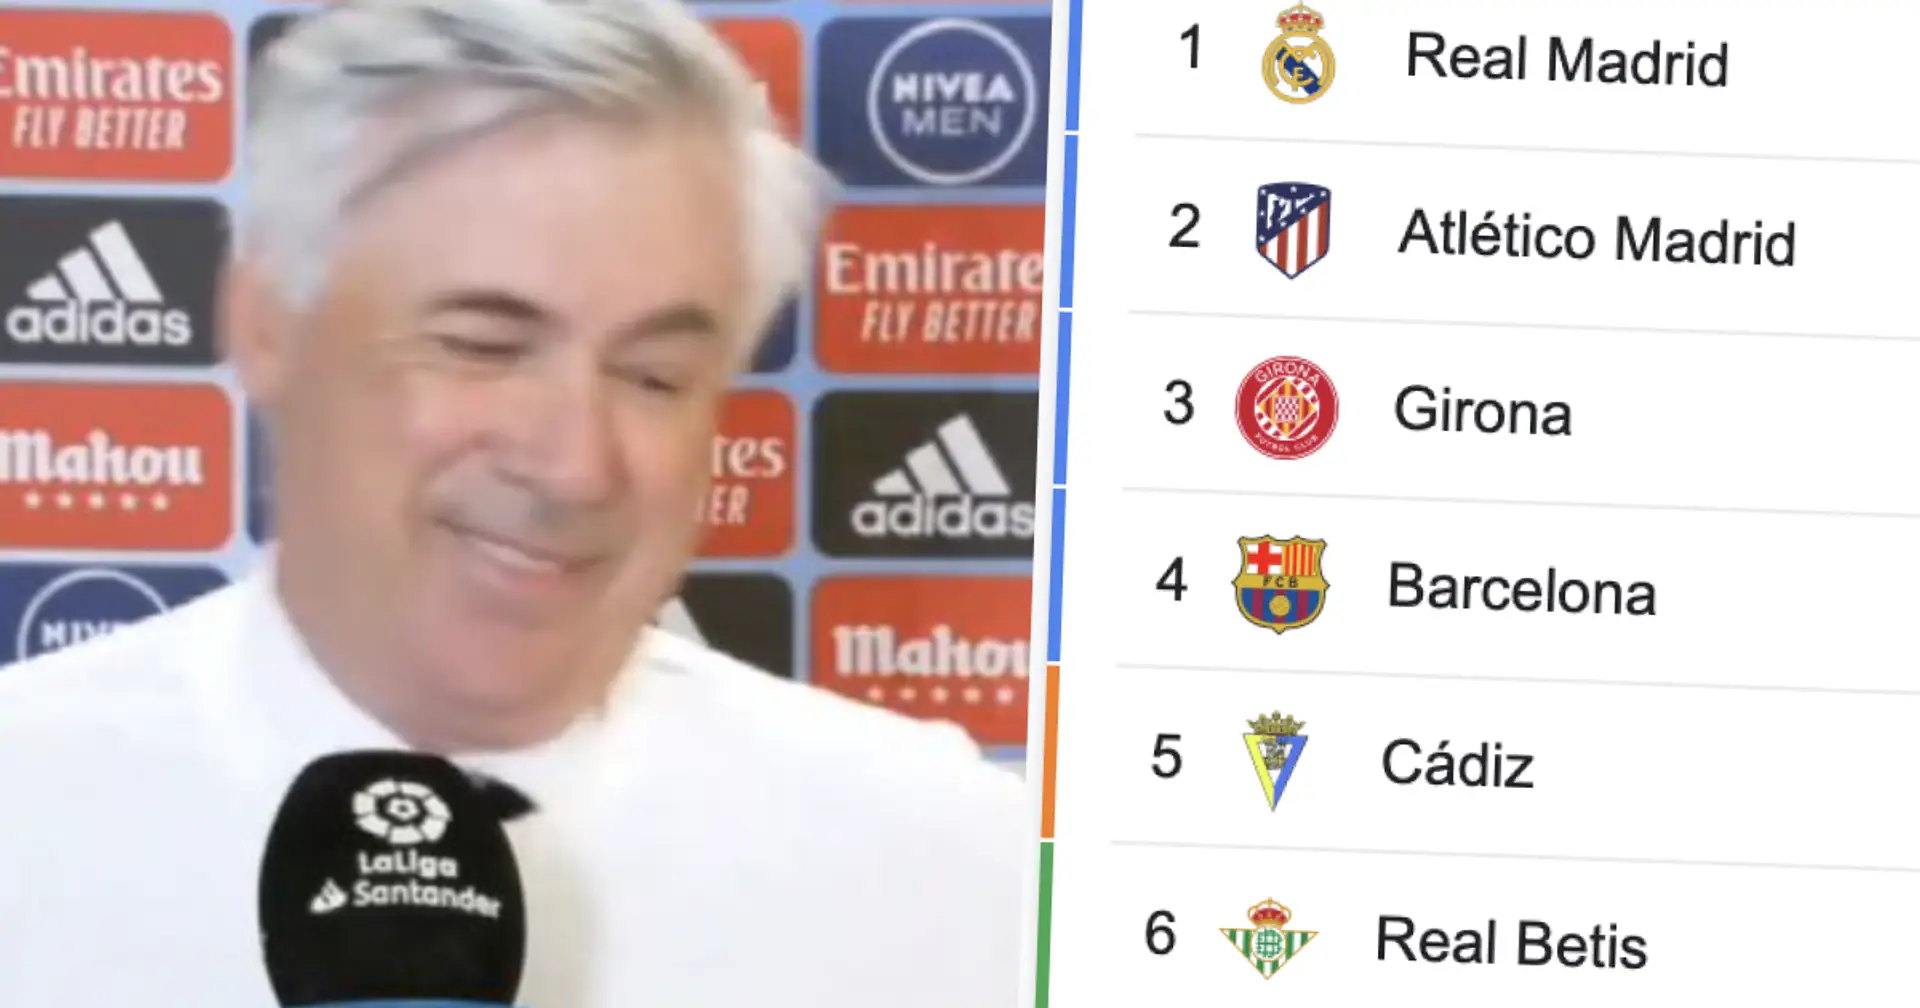 El Real Madrid en primero: un vistazo a la clasificación de La Liga antes del parón internacional